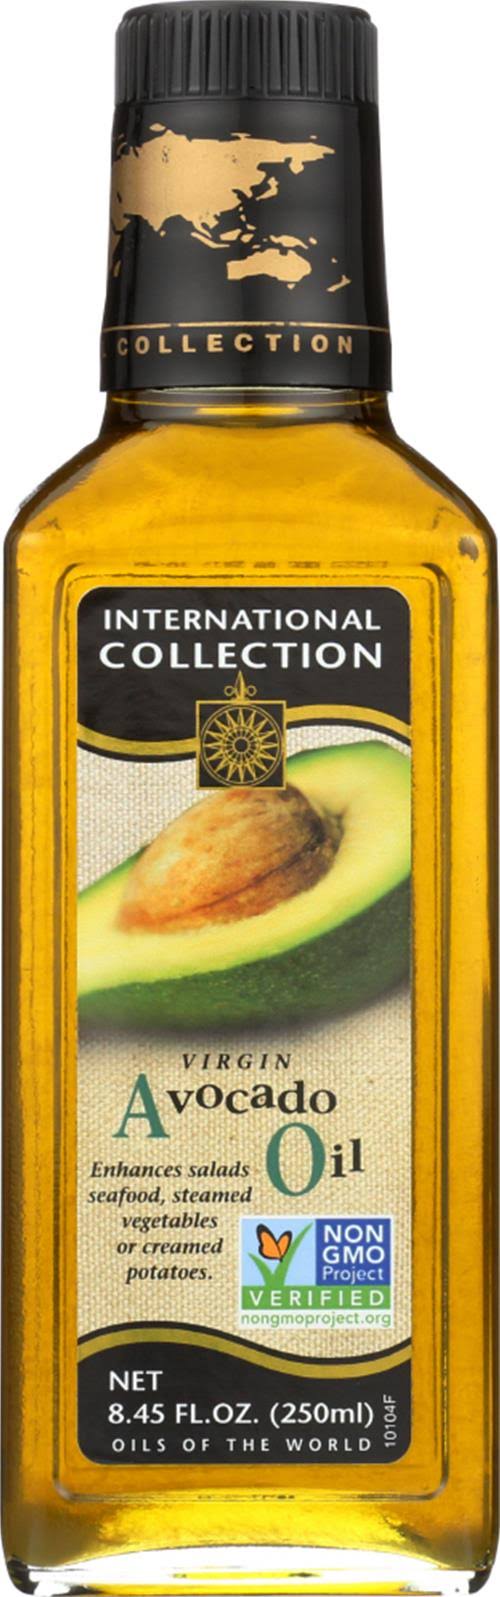 International Collection Avocado Oil, Virgin - 8.45 fl oz